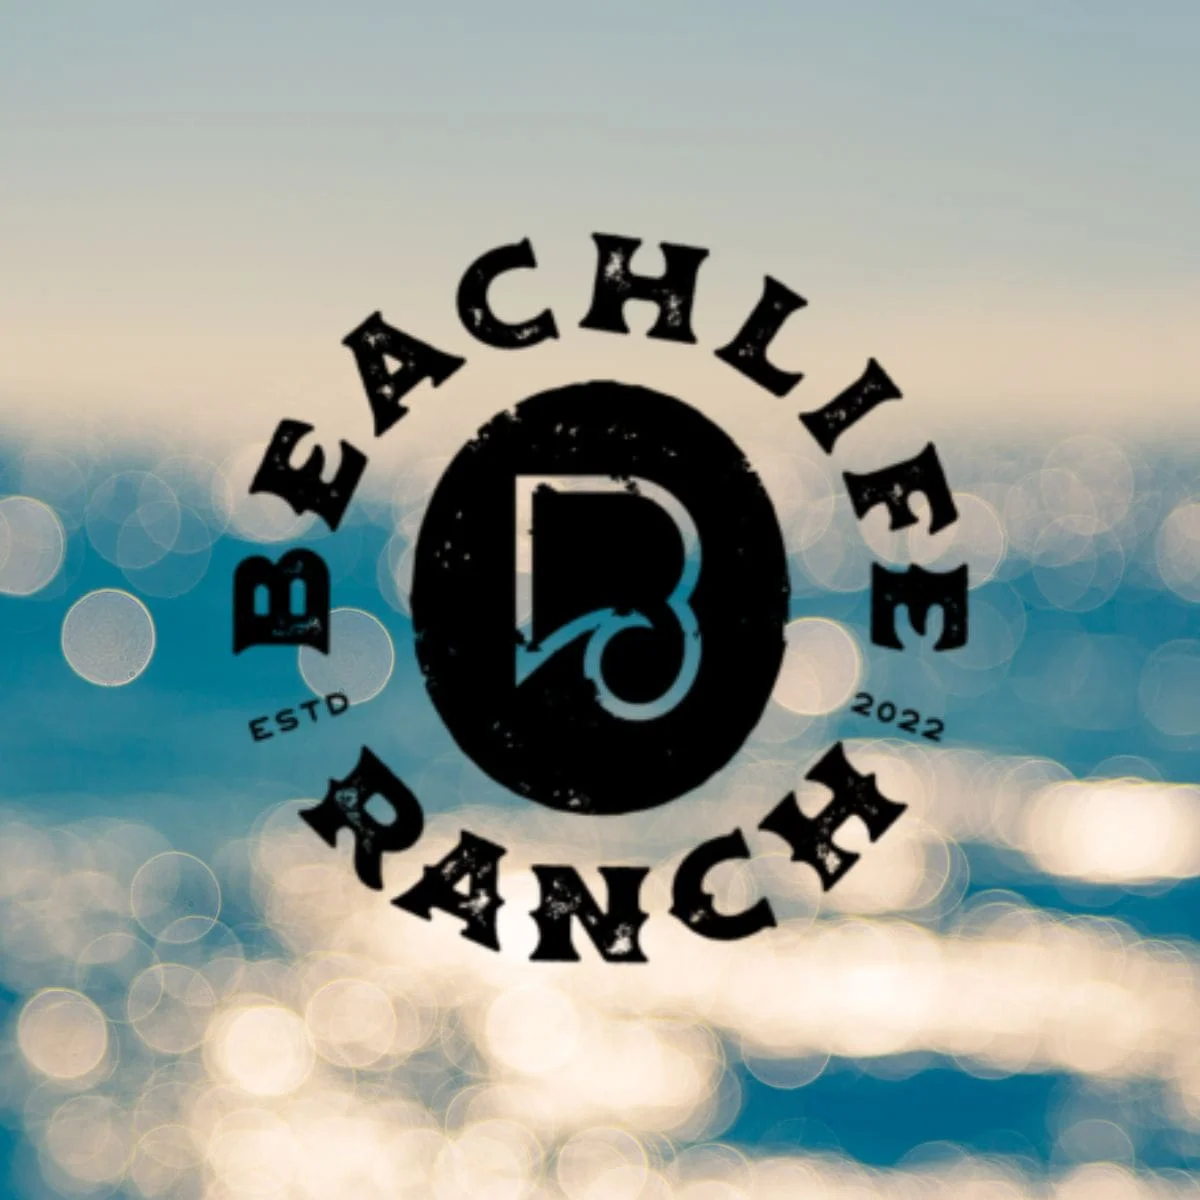 Beachlife Ranch Festival Redondo Beach